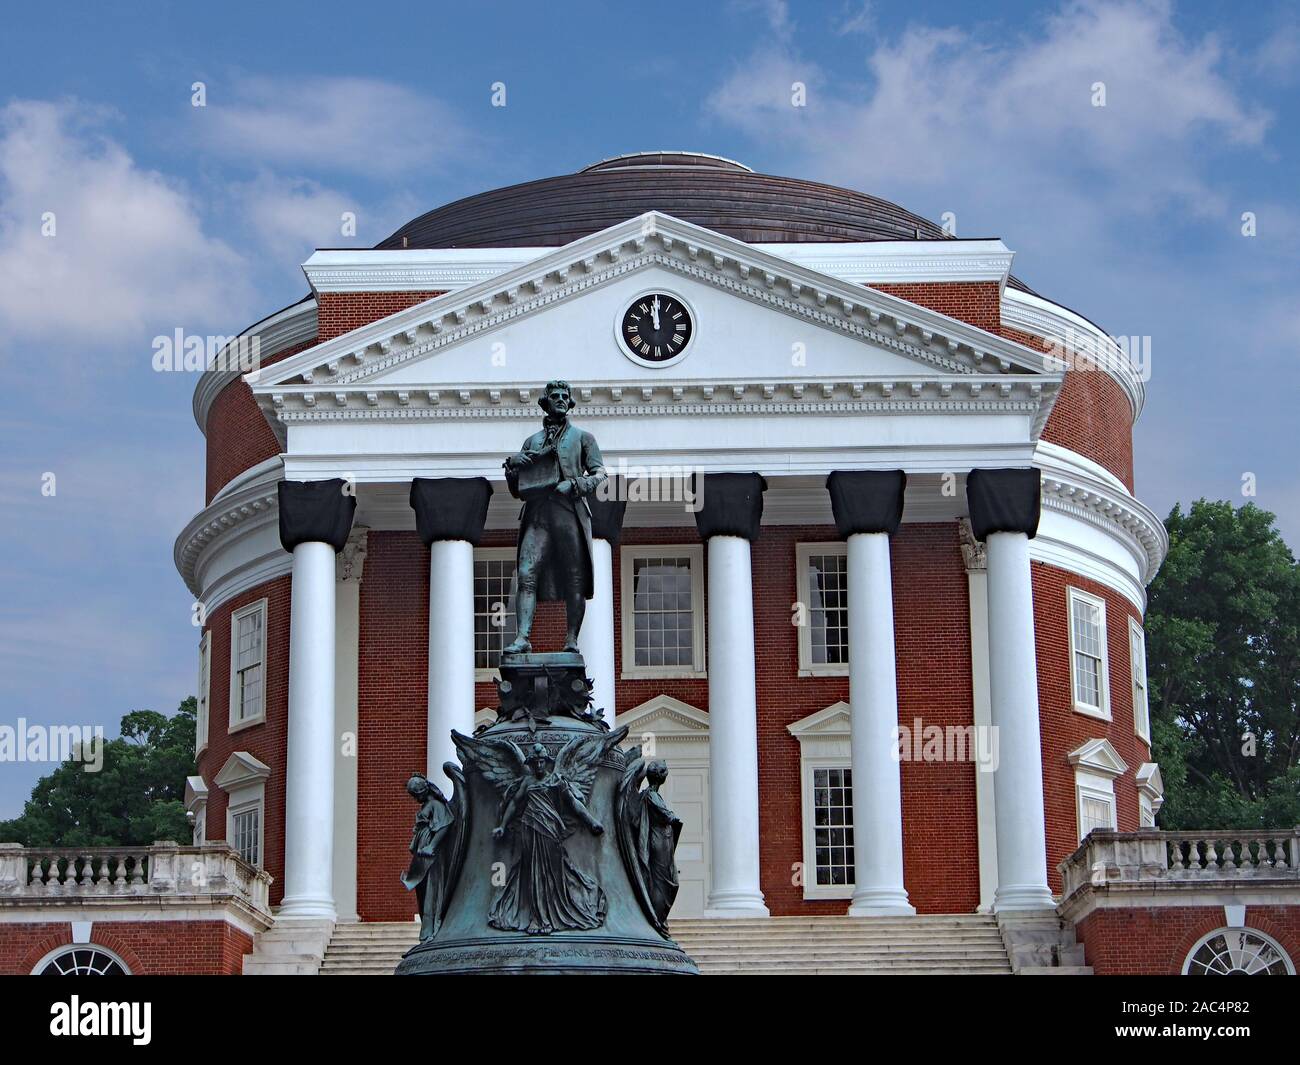 CHARLOTTESVILLE, Virginia - Juni 2014: Die Universität von Virginia stolz gibt einen prominenten Platz mit der Statue des Gründers, Thomas Jefferson. Stockfoto